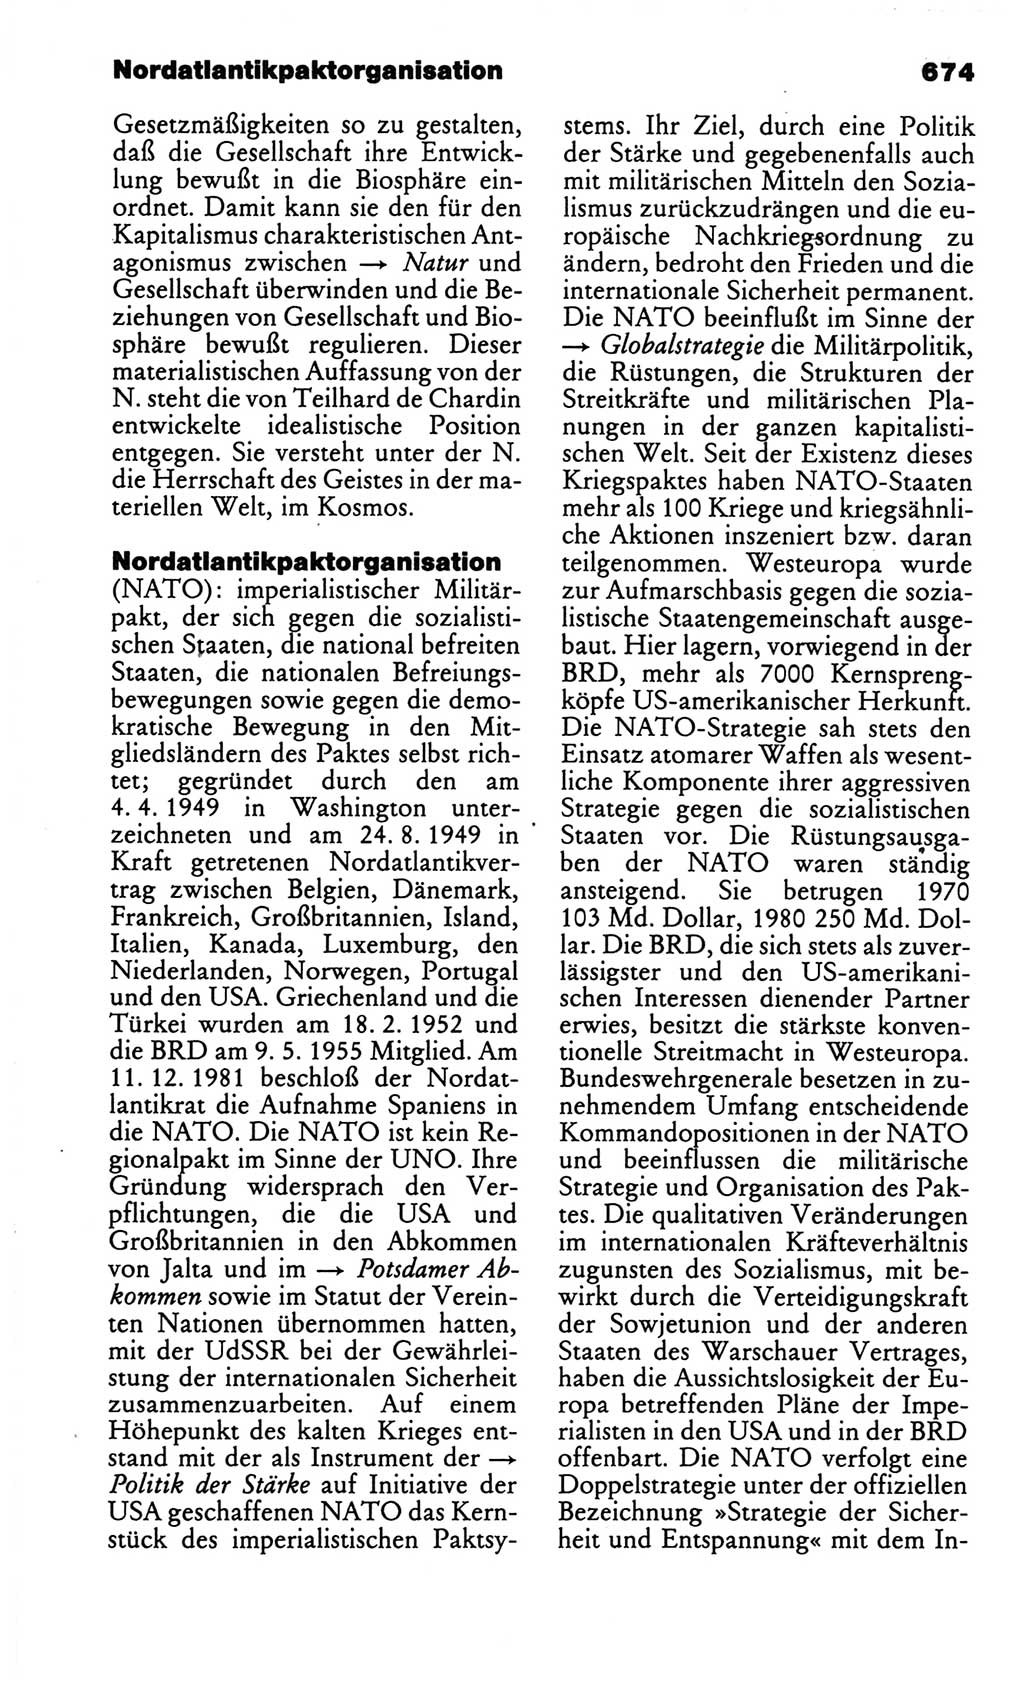 Kleines politisches Wörterbuch [Deutsche Demokratische Republik (DDR)] 1986, Seite 674 (Kl. pol. Wb. DDR 1986, S. 674)